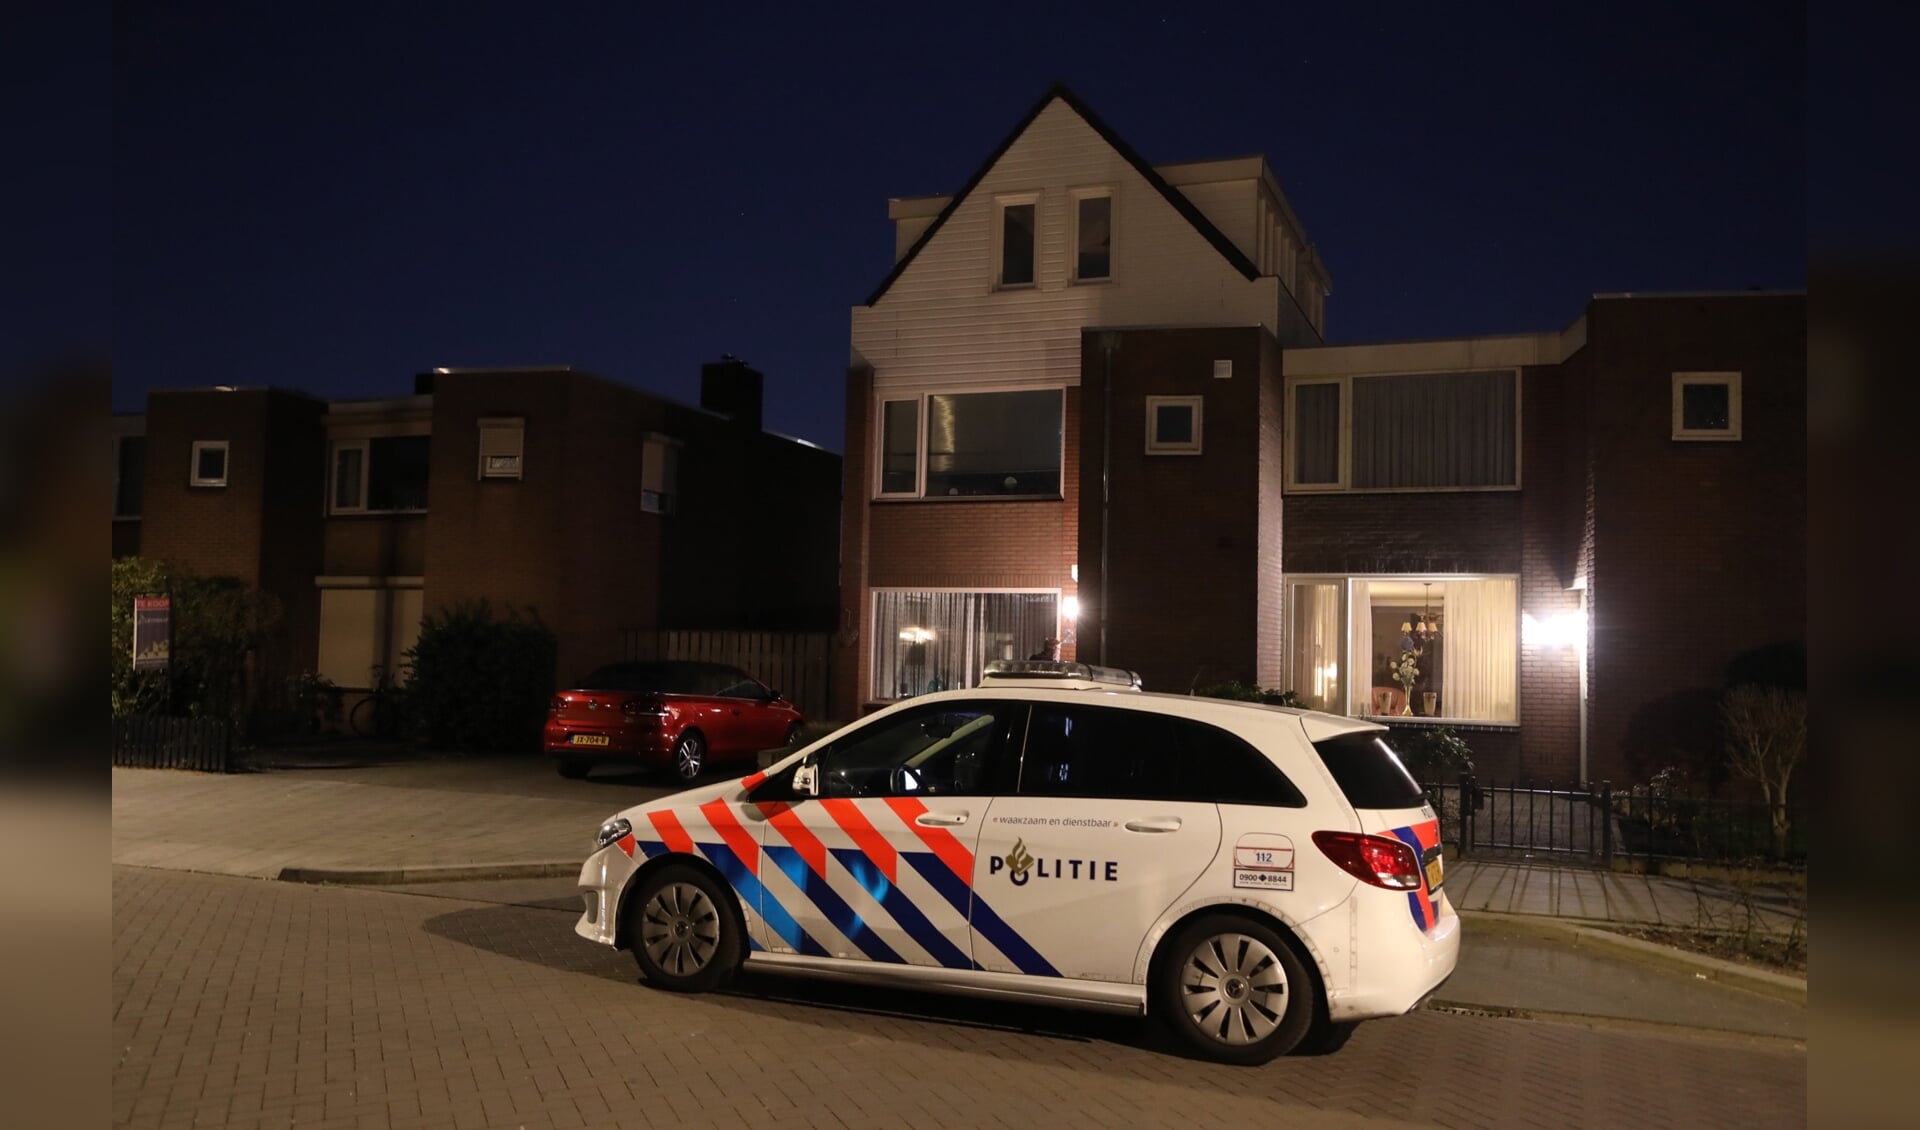 Politie onderzoekt overval in woning Hertog Hendrik 1 straat. (Foto: Gabor Heeres, Foto Mallo)